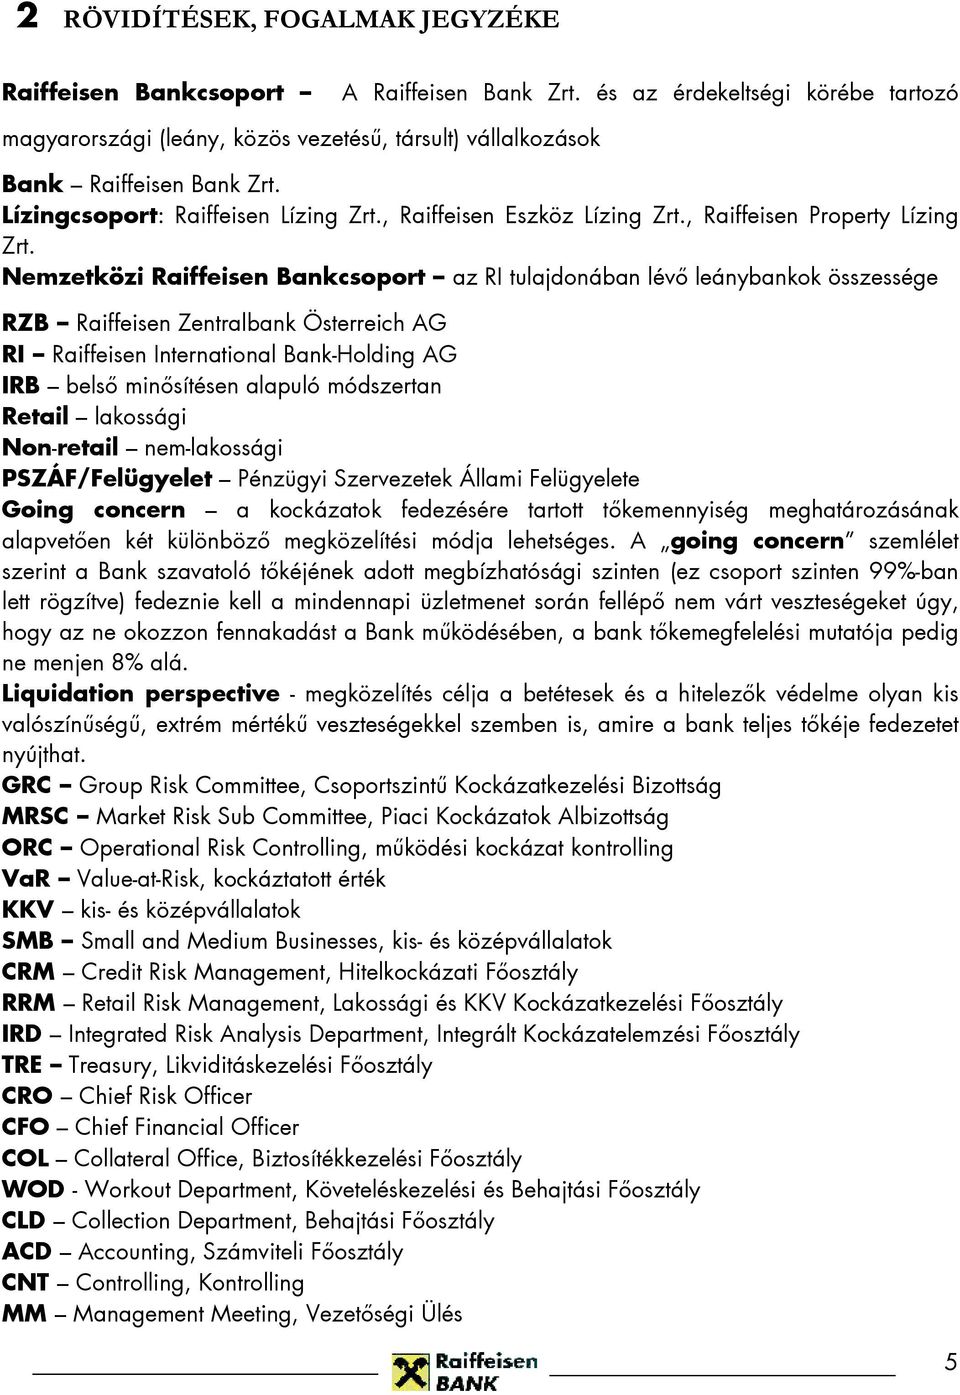 Nemzetközi Raiffeisen Bankcsoport az RI tulajdonában lévő leánybankok összessége RZB Raiffeisen Zentralbank Österreich AG RI Raiffeisen International Bank-Holding AG IRB belső minősítésen alapuló